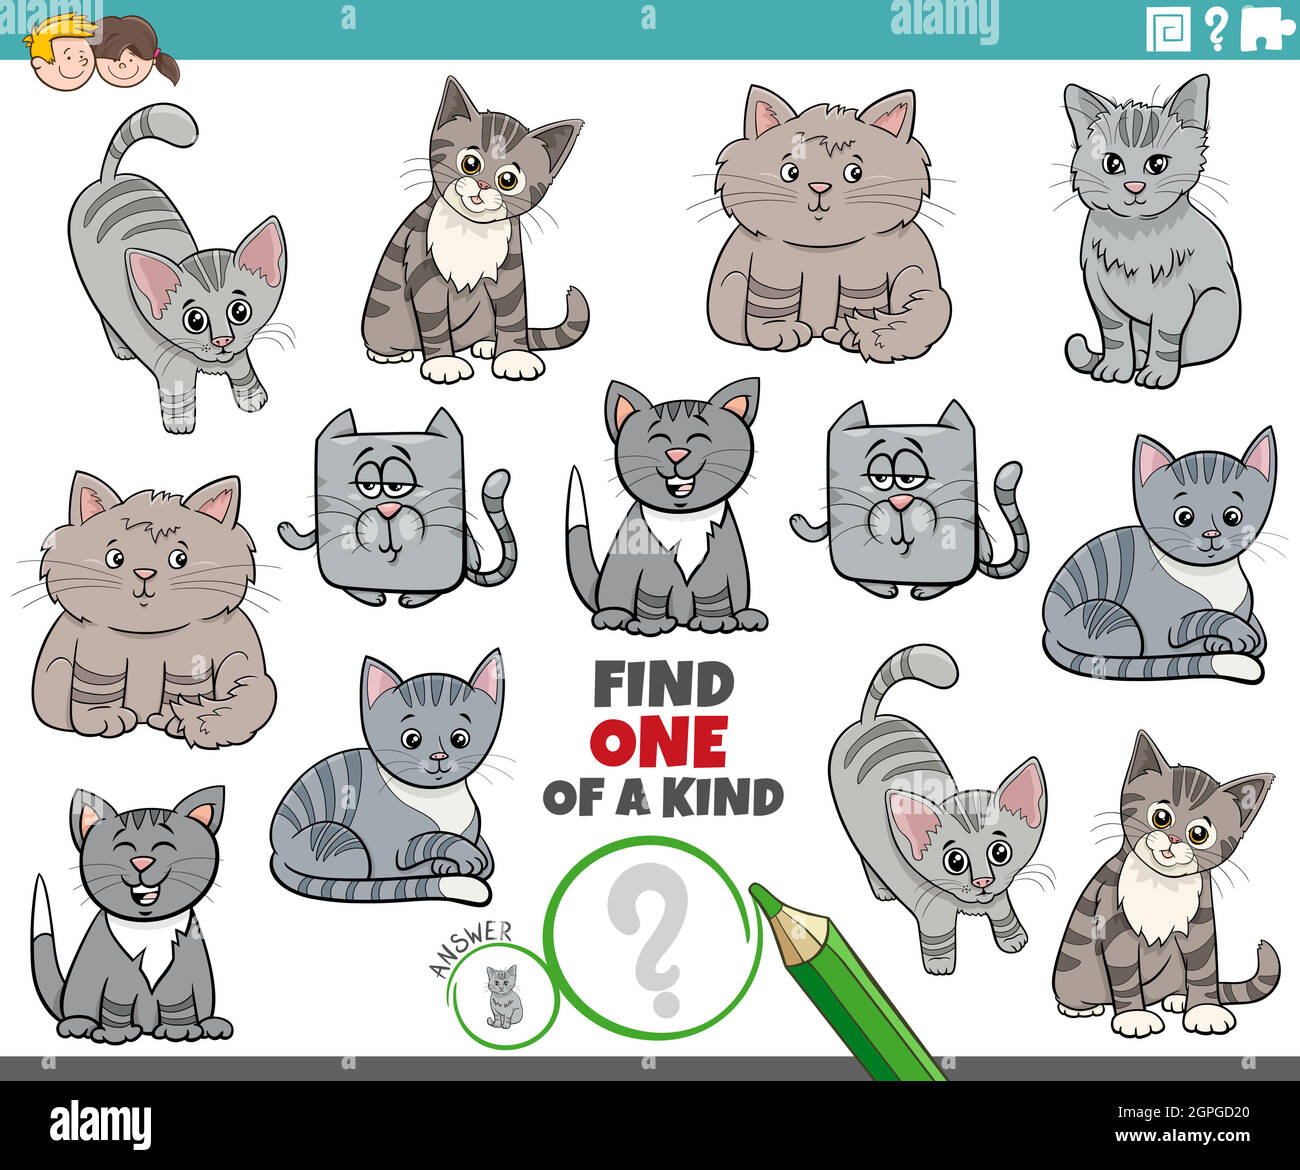 uno di un gioco gentile per i bambini con i gatti carini dei cartoni animati Illustrazione Vettoriale